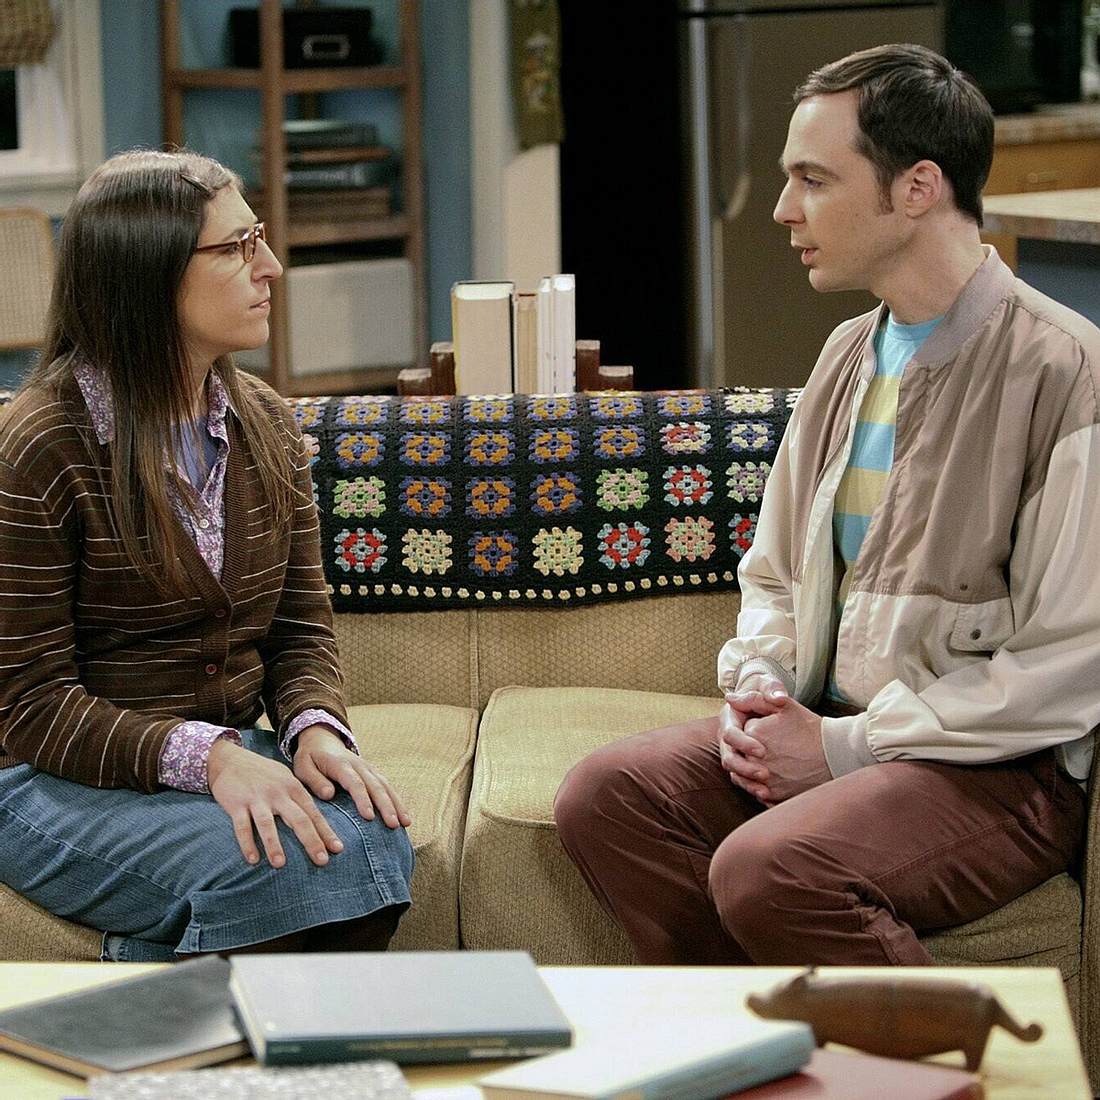 Die traurigsten Serien-Momente: The Big Bang Theory – Trennung von Amy und Sheldon